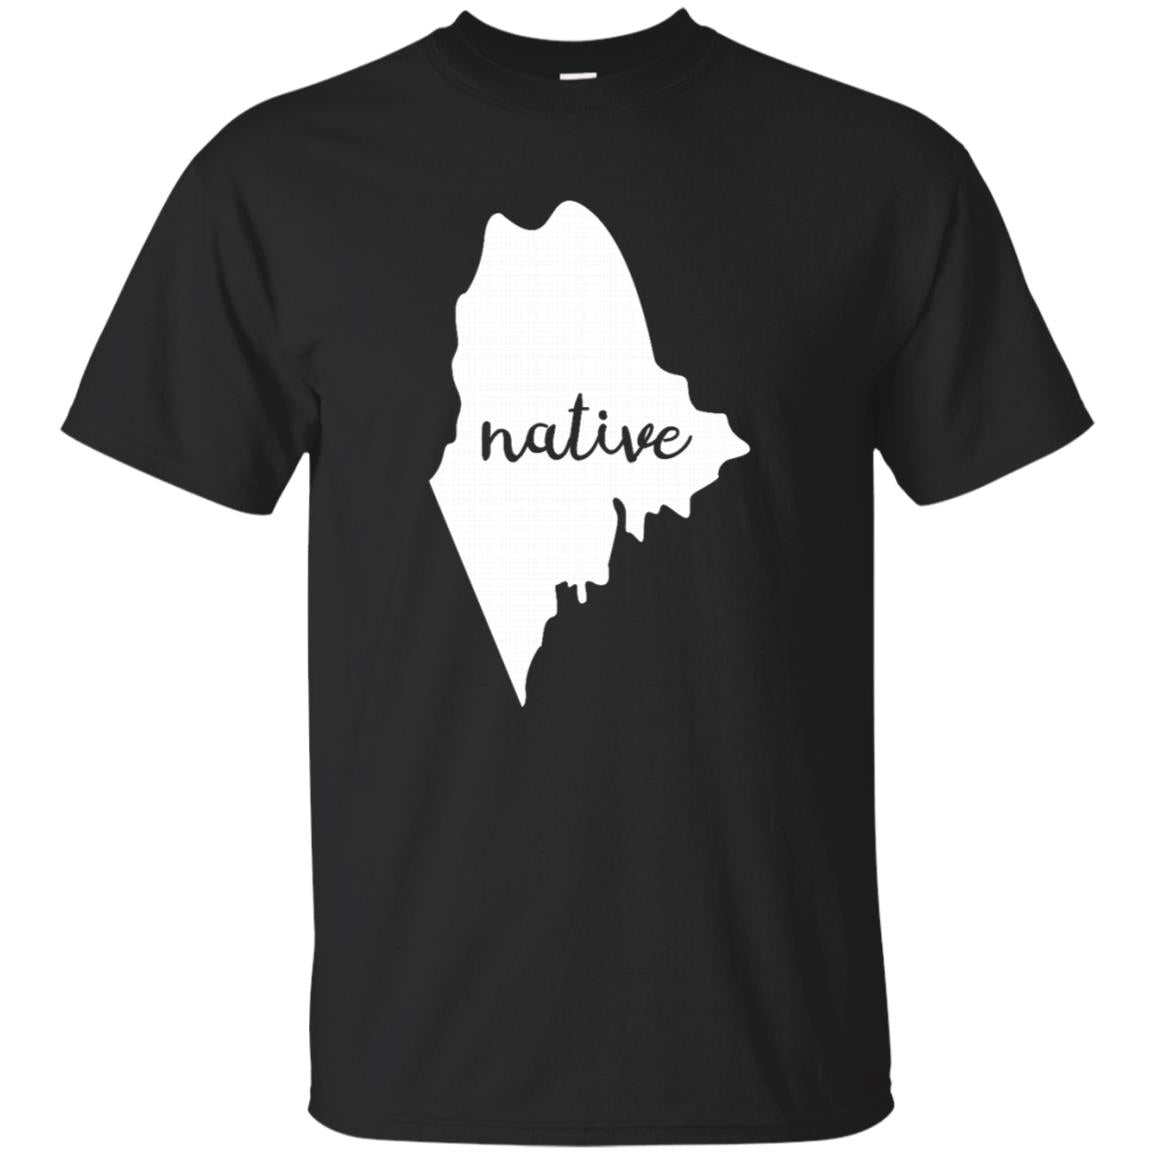 Maine Native Pine Tree State T Shirt